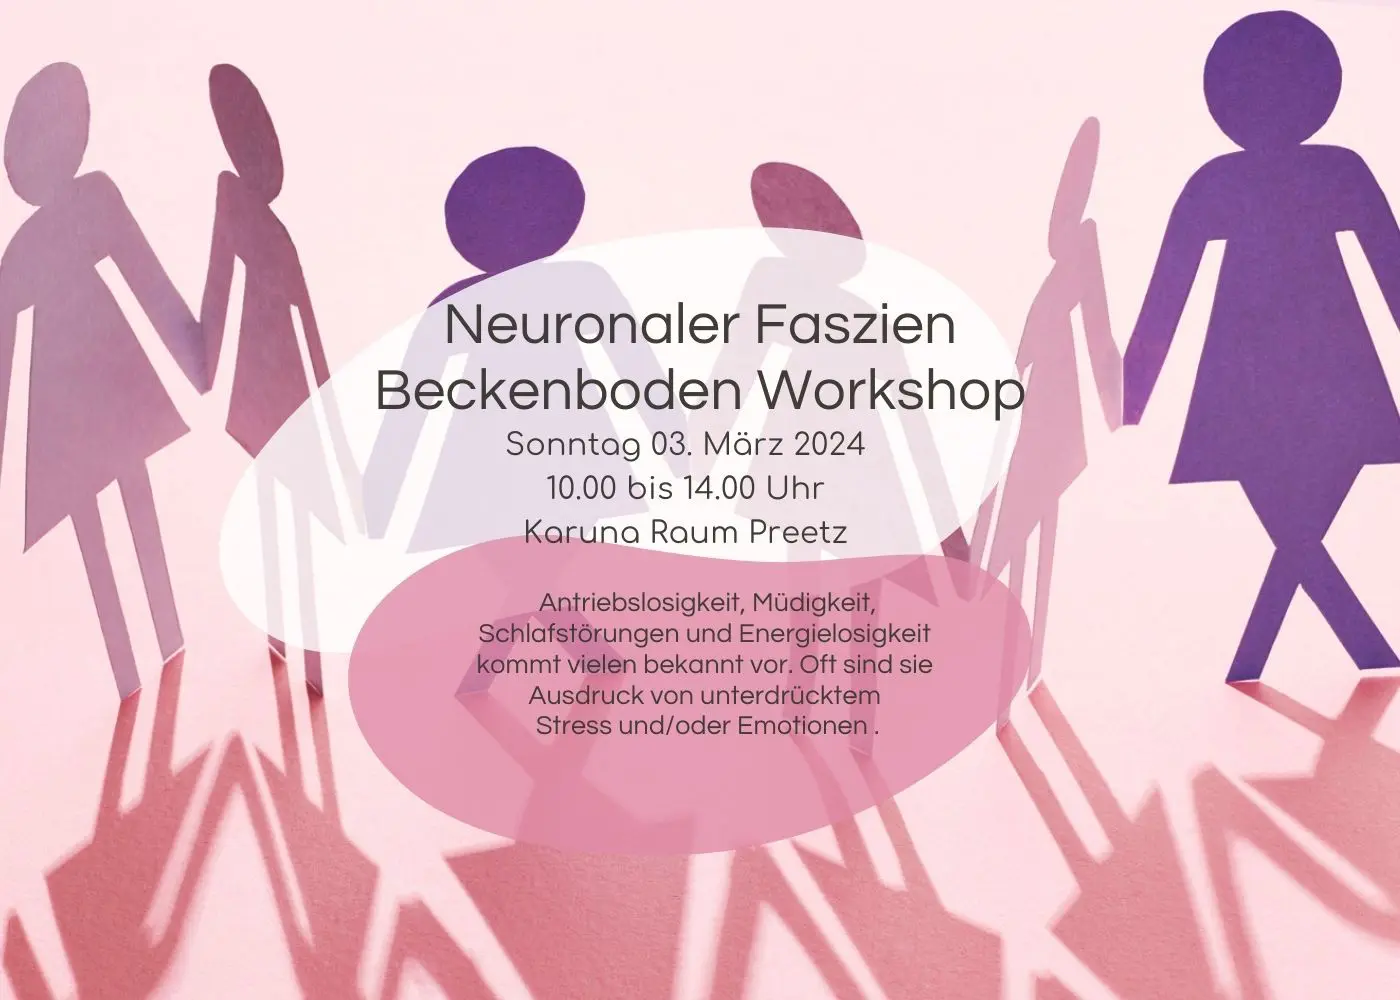 Neuronaler Faszien Beckenboden Workshop am 03. März 2024  zwischen 10 – 14 Uhr